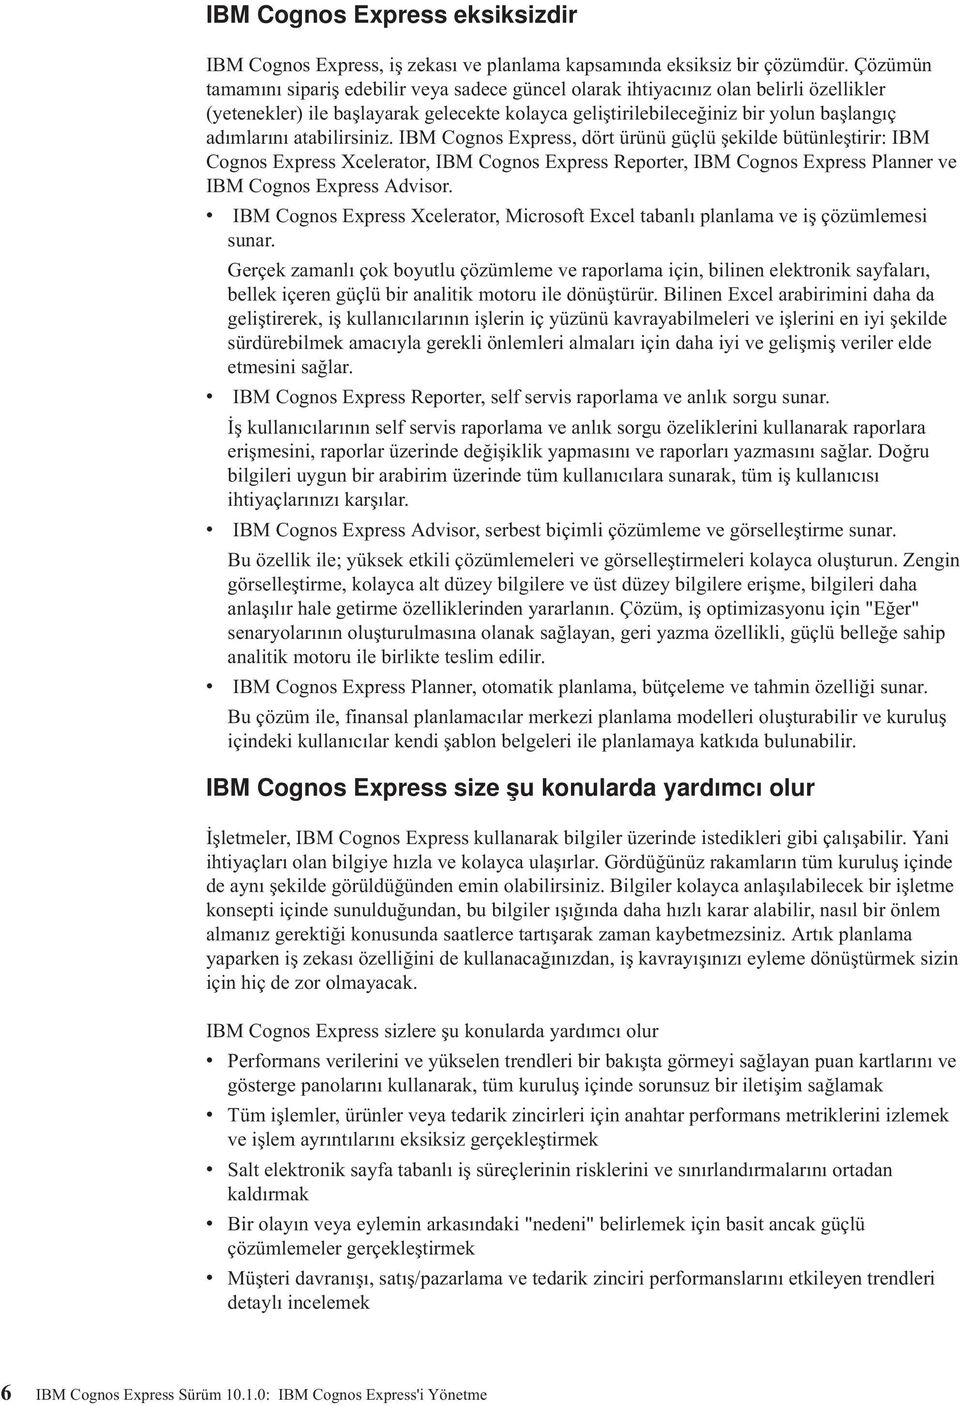 atabilirsiniz. IBM Cognos Express, dört ürünü güçlü şekilde bütünleştirir: IBM Cognos Express Xcelerator, IBM Cognos Express Reporter, IBM Cognos Express Planner ve IBM Cognos Express Advisor.